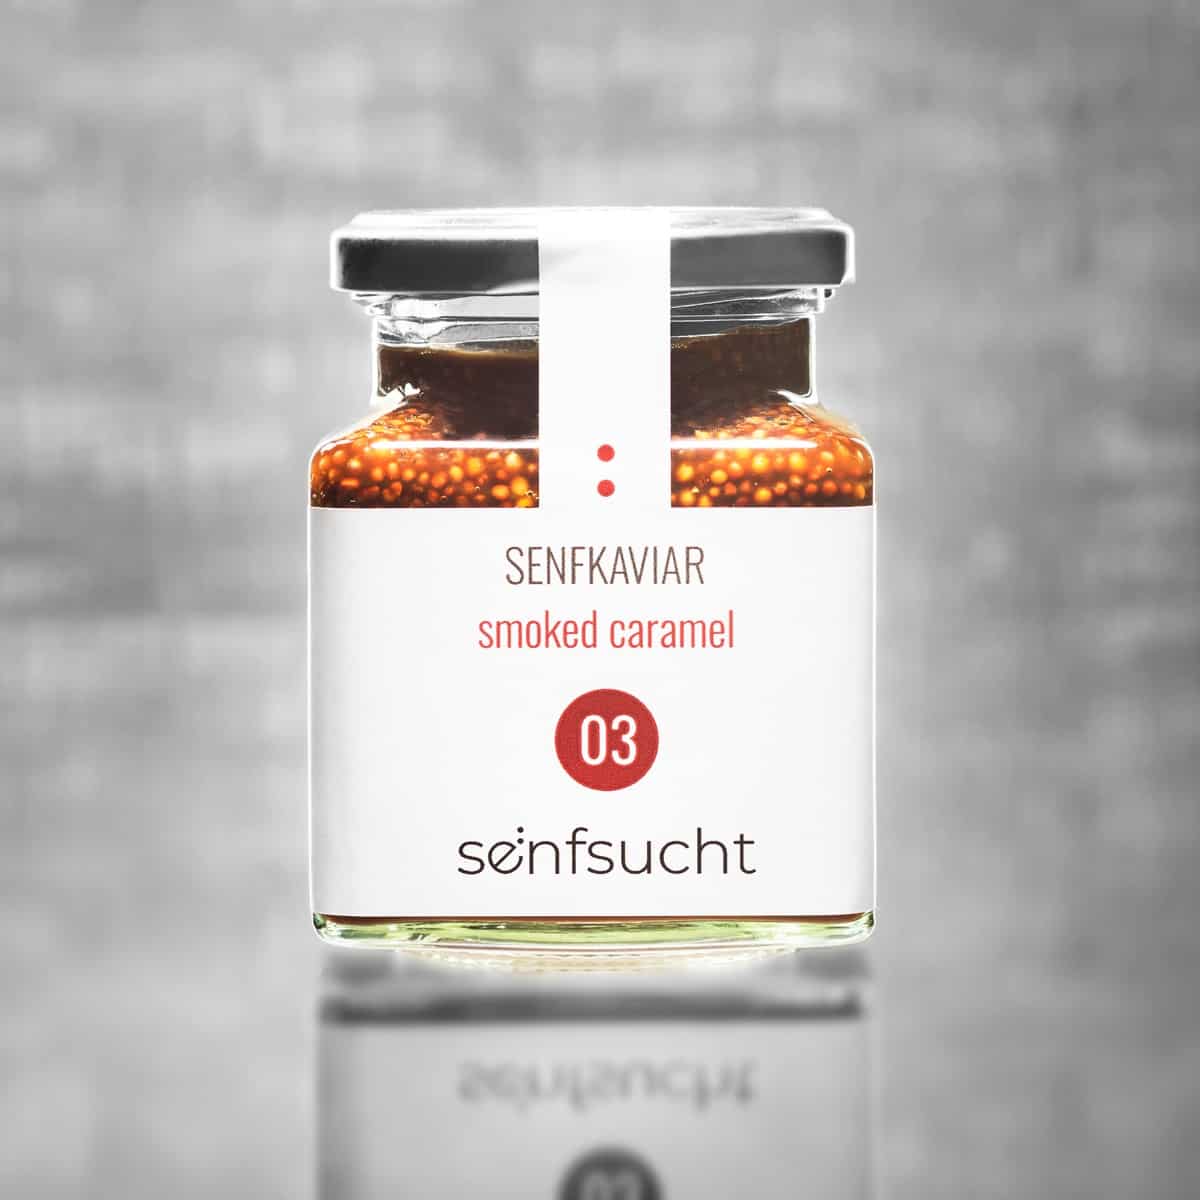 Senfkaviar | smoked caramel